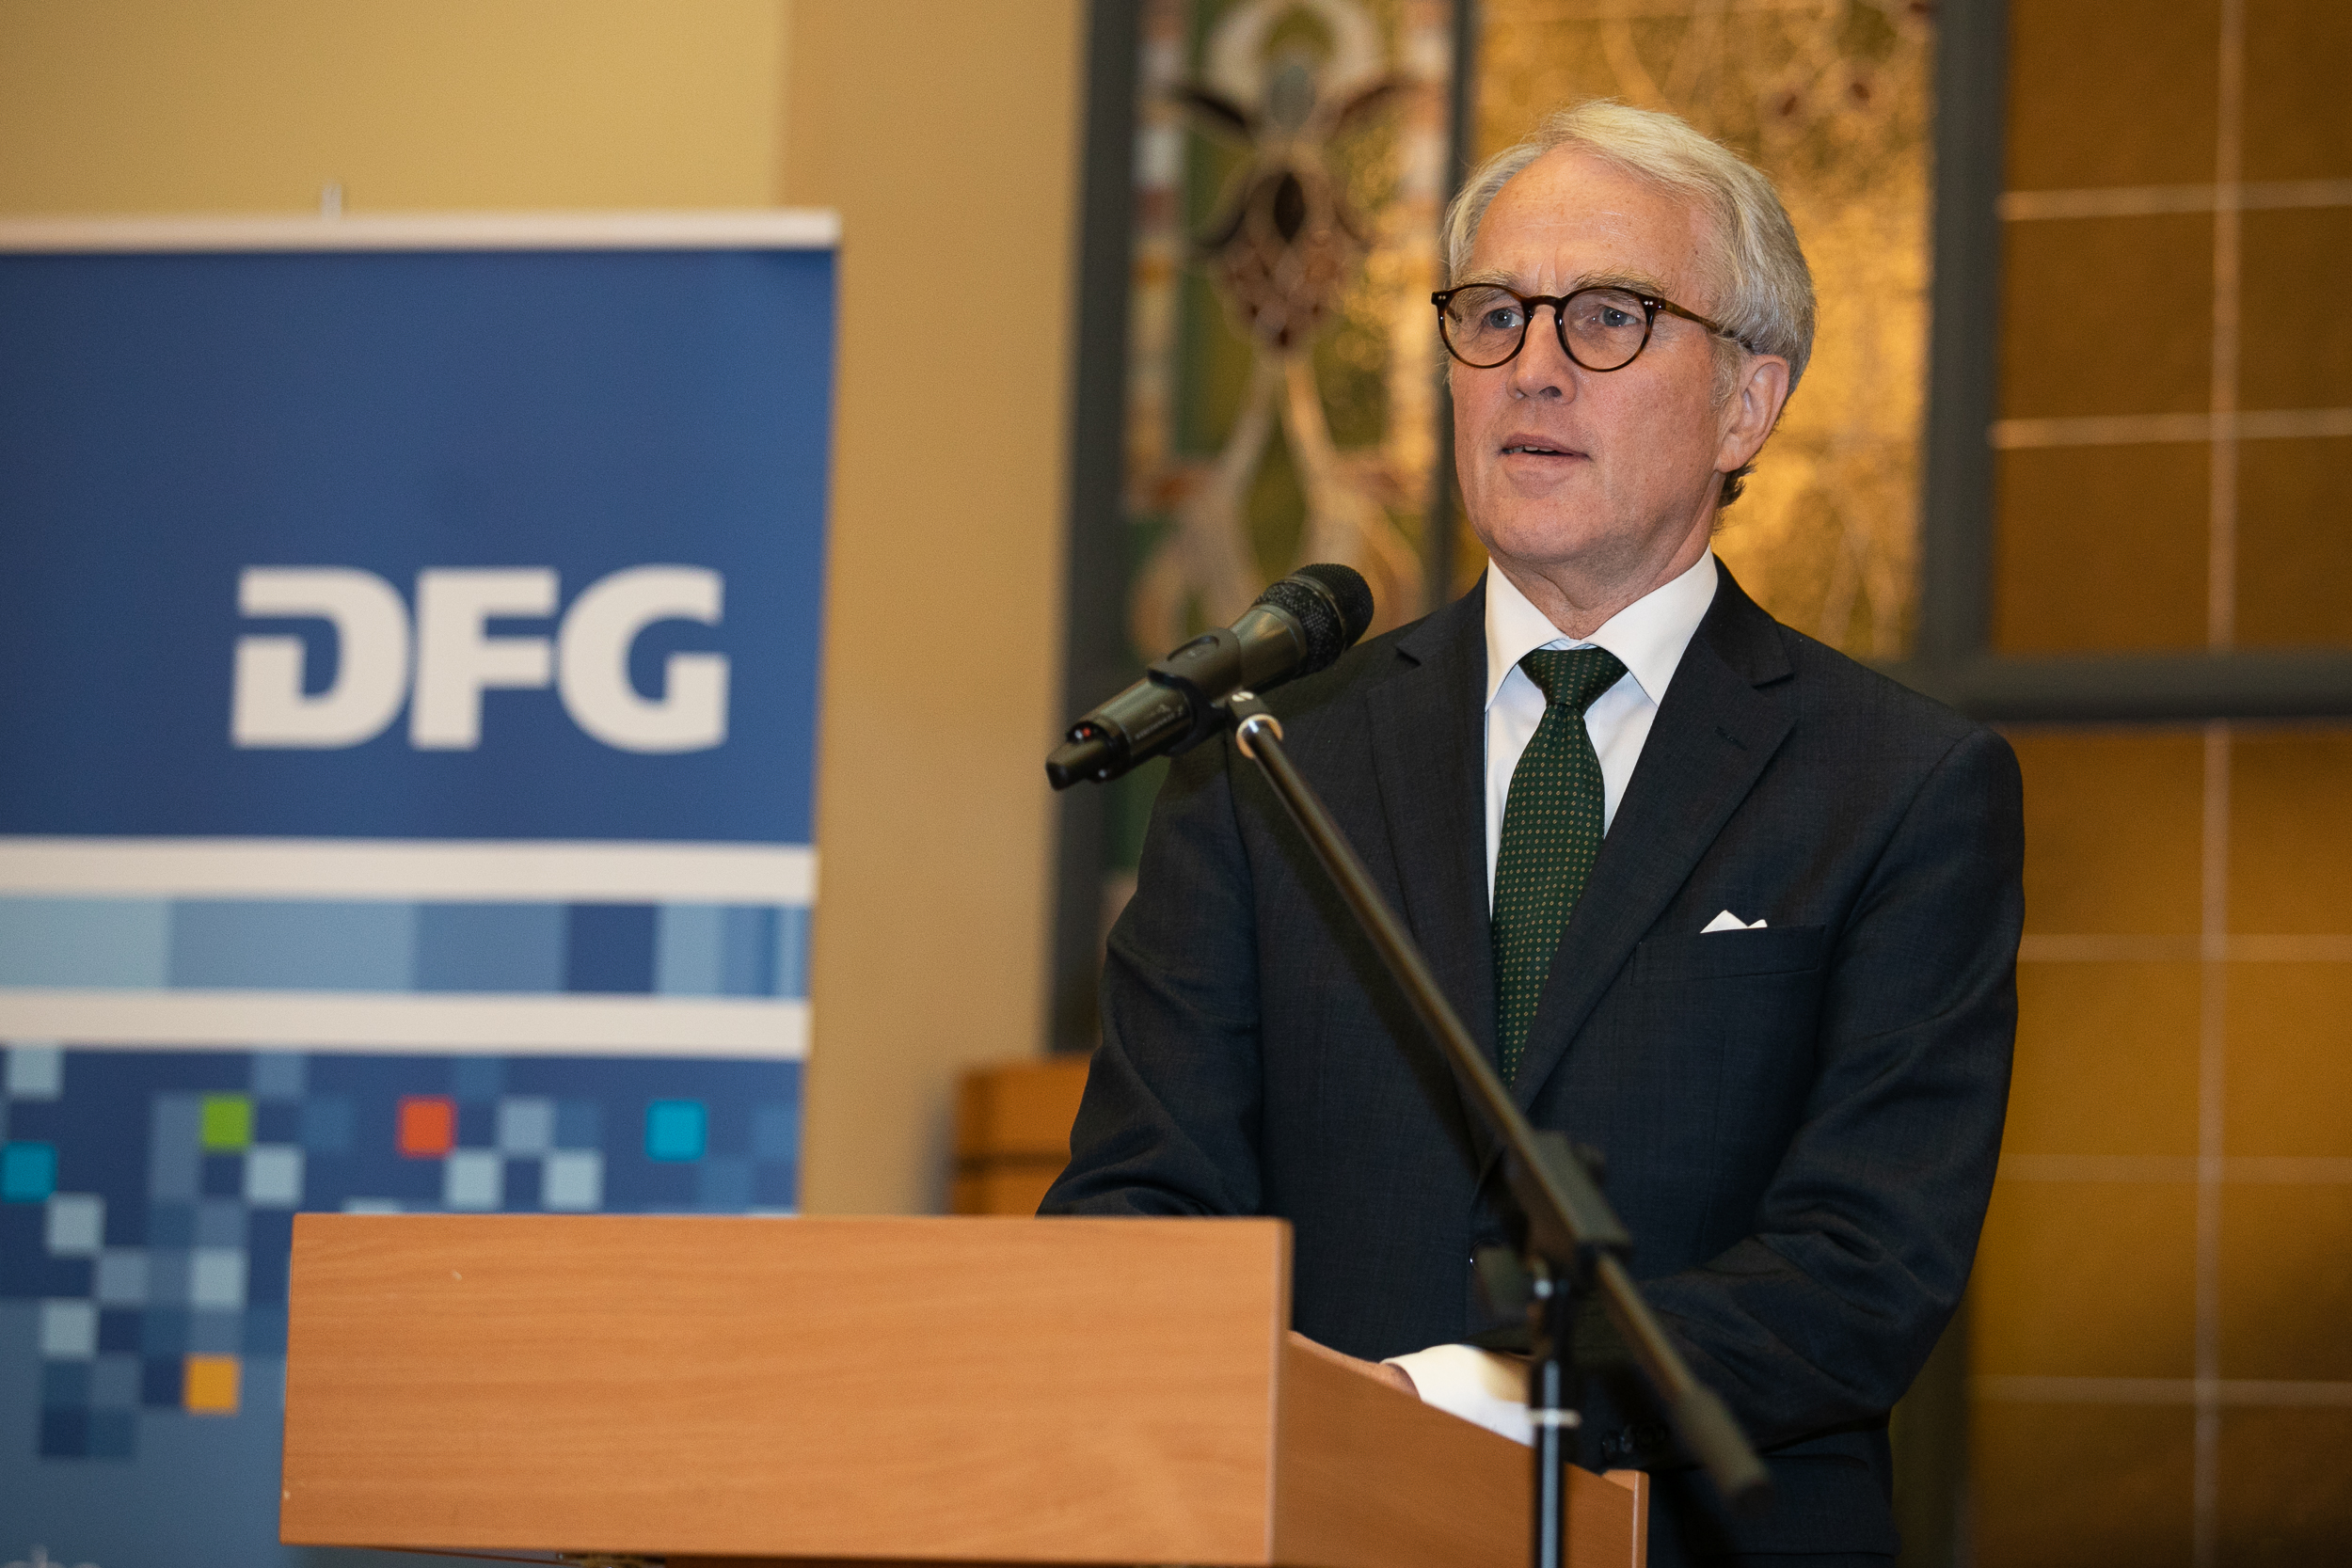 Botschafter Rüdiger von Fritsch überbringt Grußworte auf dem DFG-Sommerempfang 2019